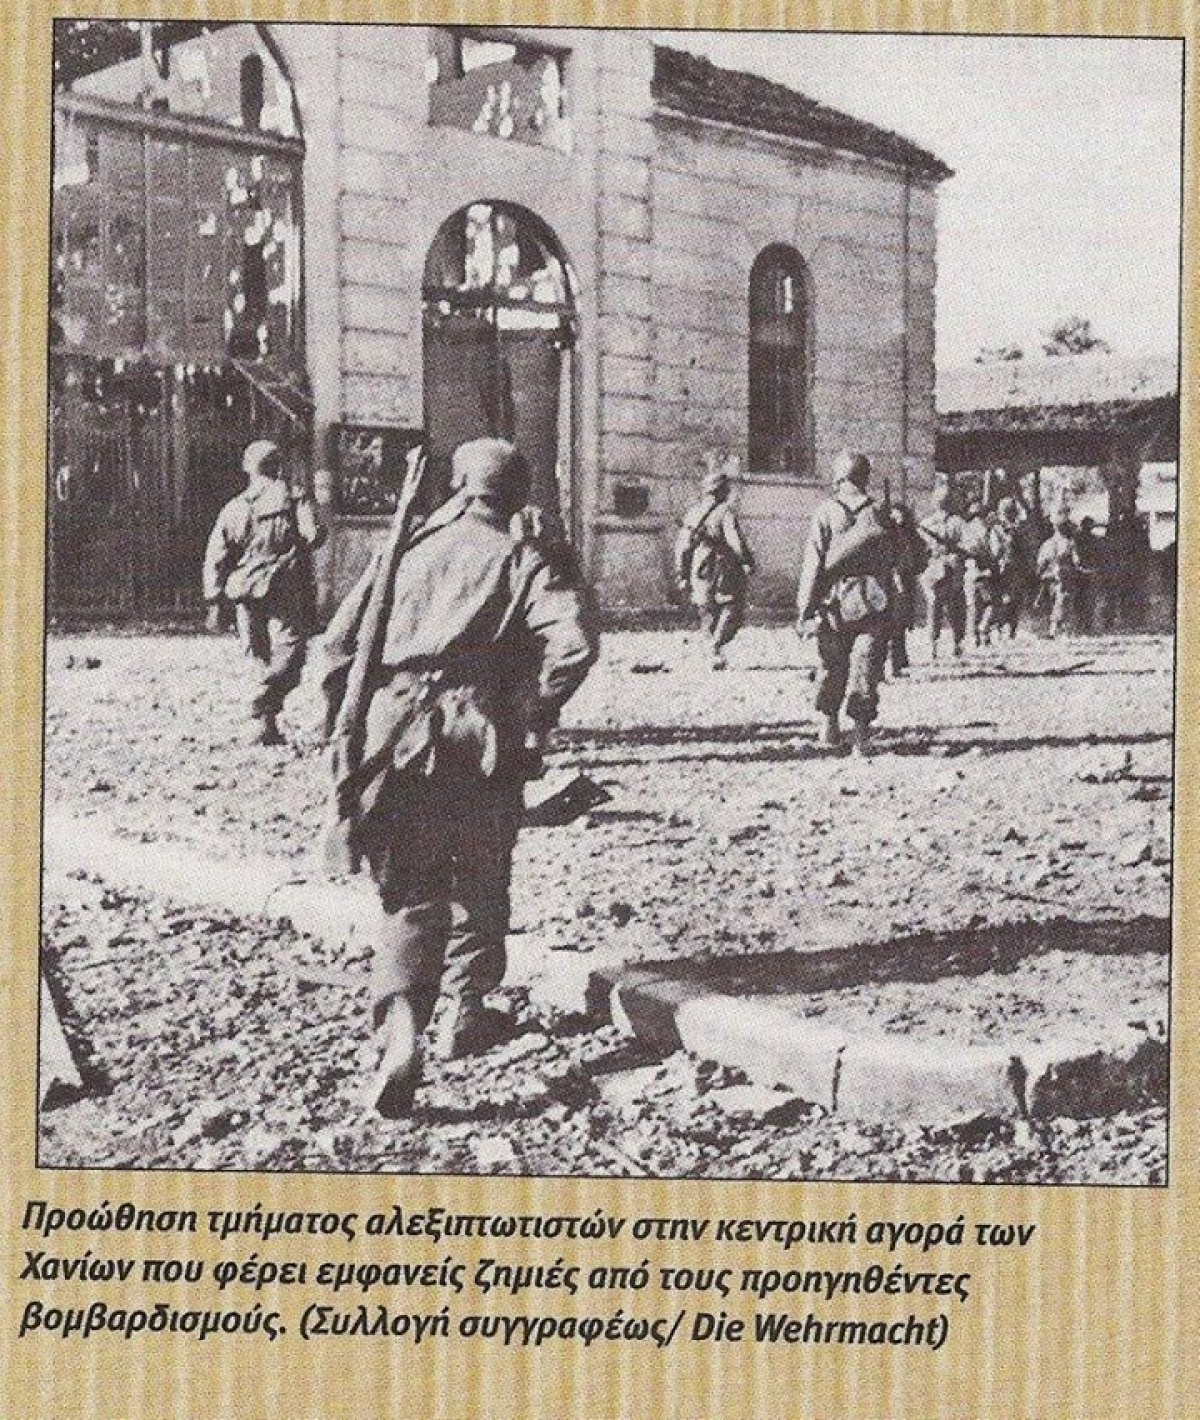 1941 Χανιά, Γερμανοί αλεξιπτωτιστές βαδίζουν προς την αγορά που φαίνεται σοβαρά τραυματισμένη από τους βομβαρδισμούς